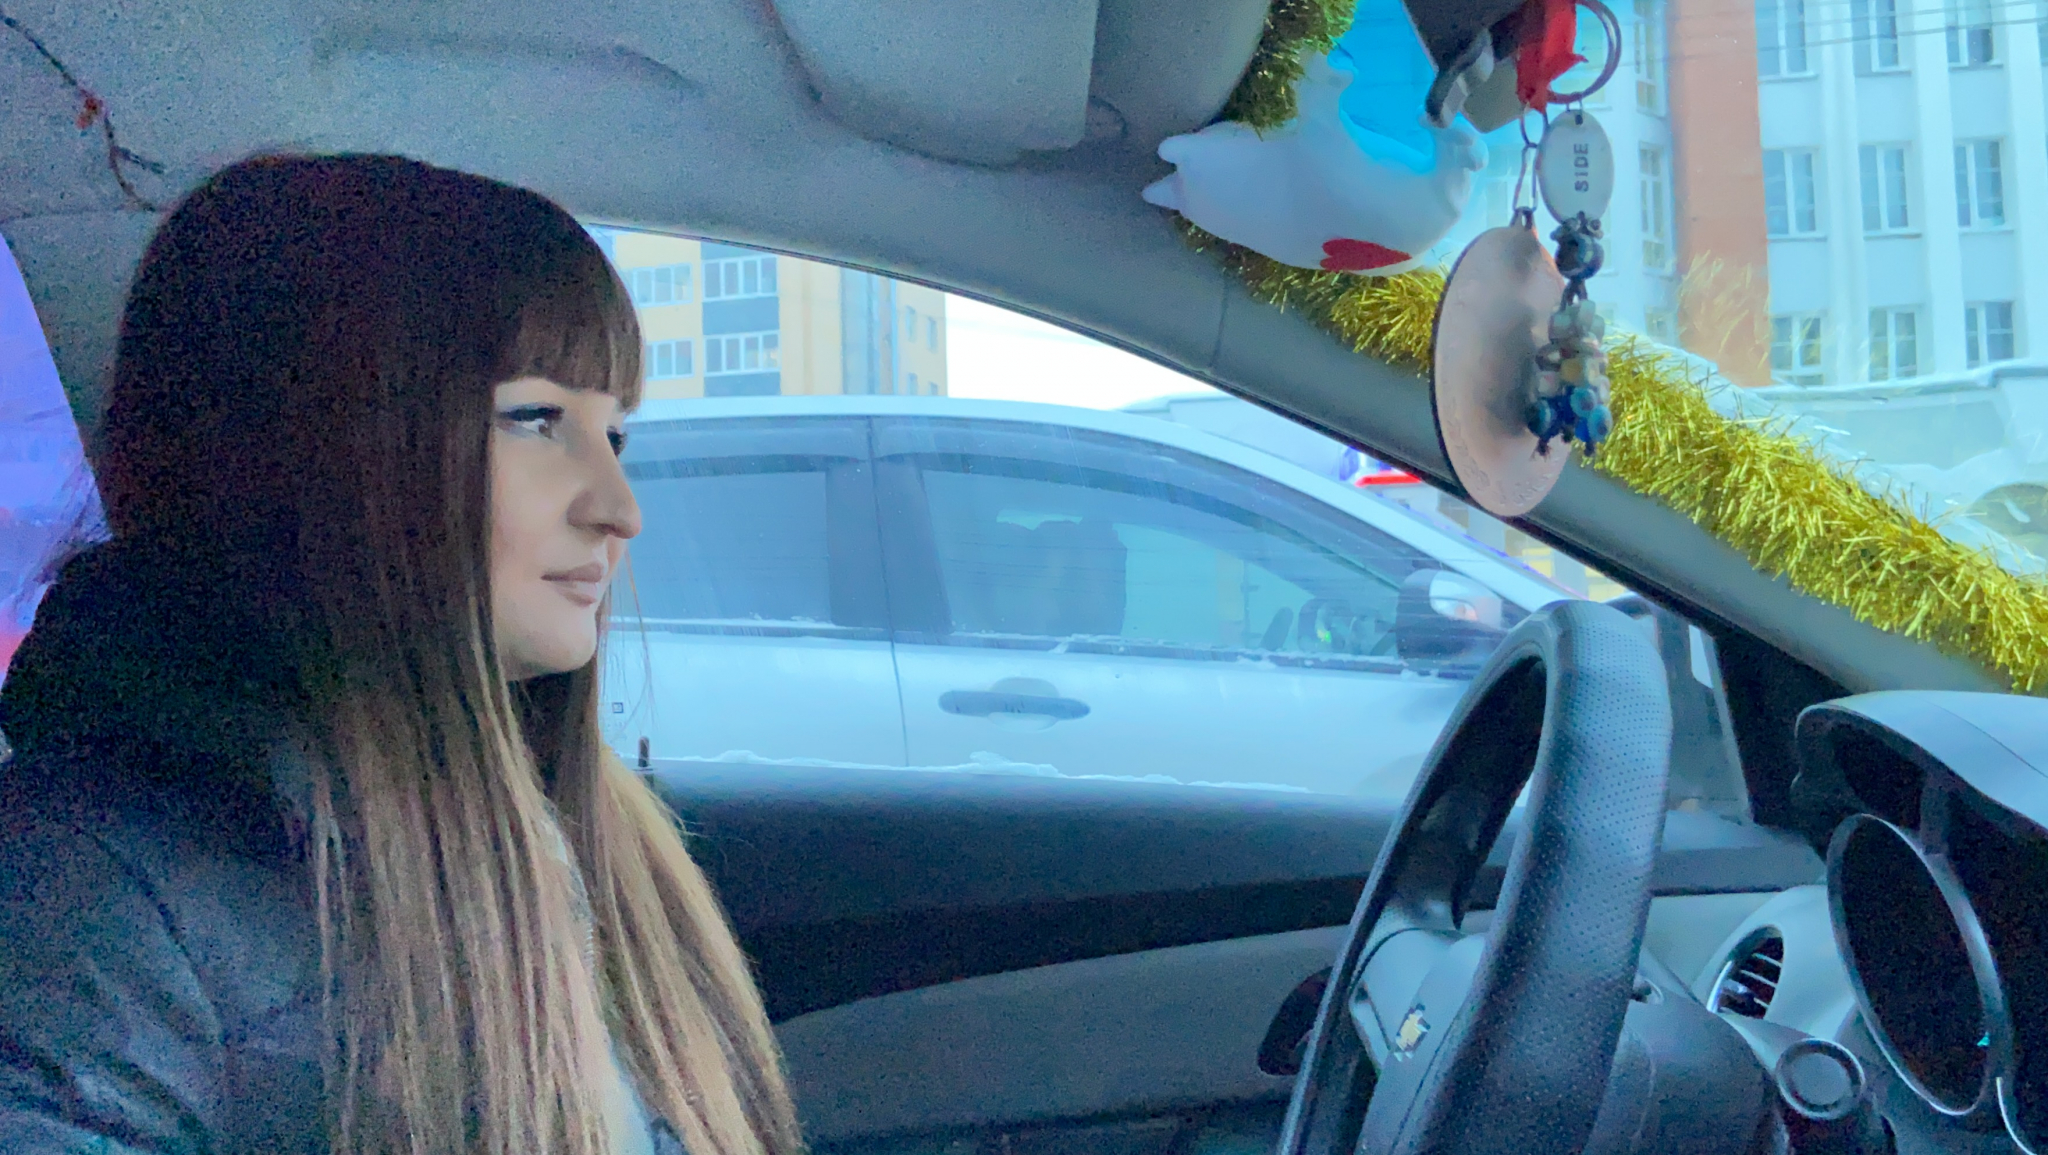 Девушка-таксист из Чебоксар о чаевых, обидчивых пассажирах и повышенном внимании: "Приходилось применять перцовый баллончик"